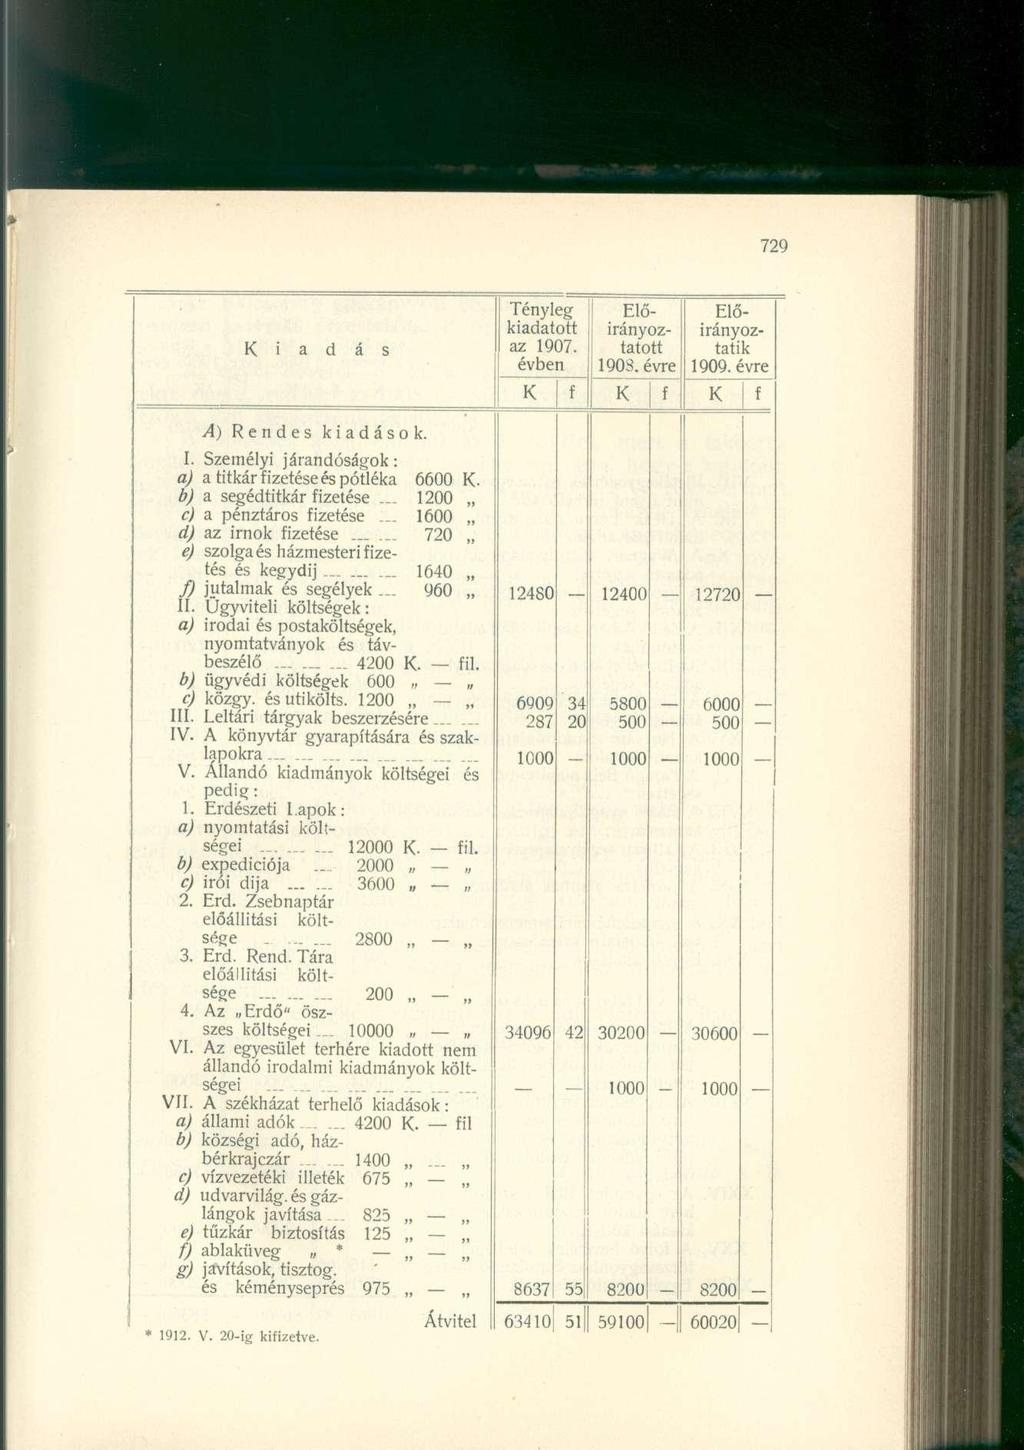 i Tényleg kiadatott az 1907. évben Előirányoztatott 190S. évre Előirányoztatik 1909. évre! A) Rendes kiadások. I. Személyi járandóságok: a) a titkár izetése és pótléka 6600. b) a segédtitkár izetése.